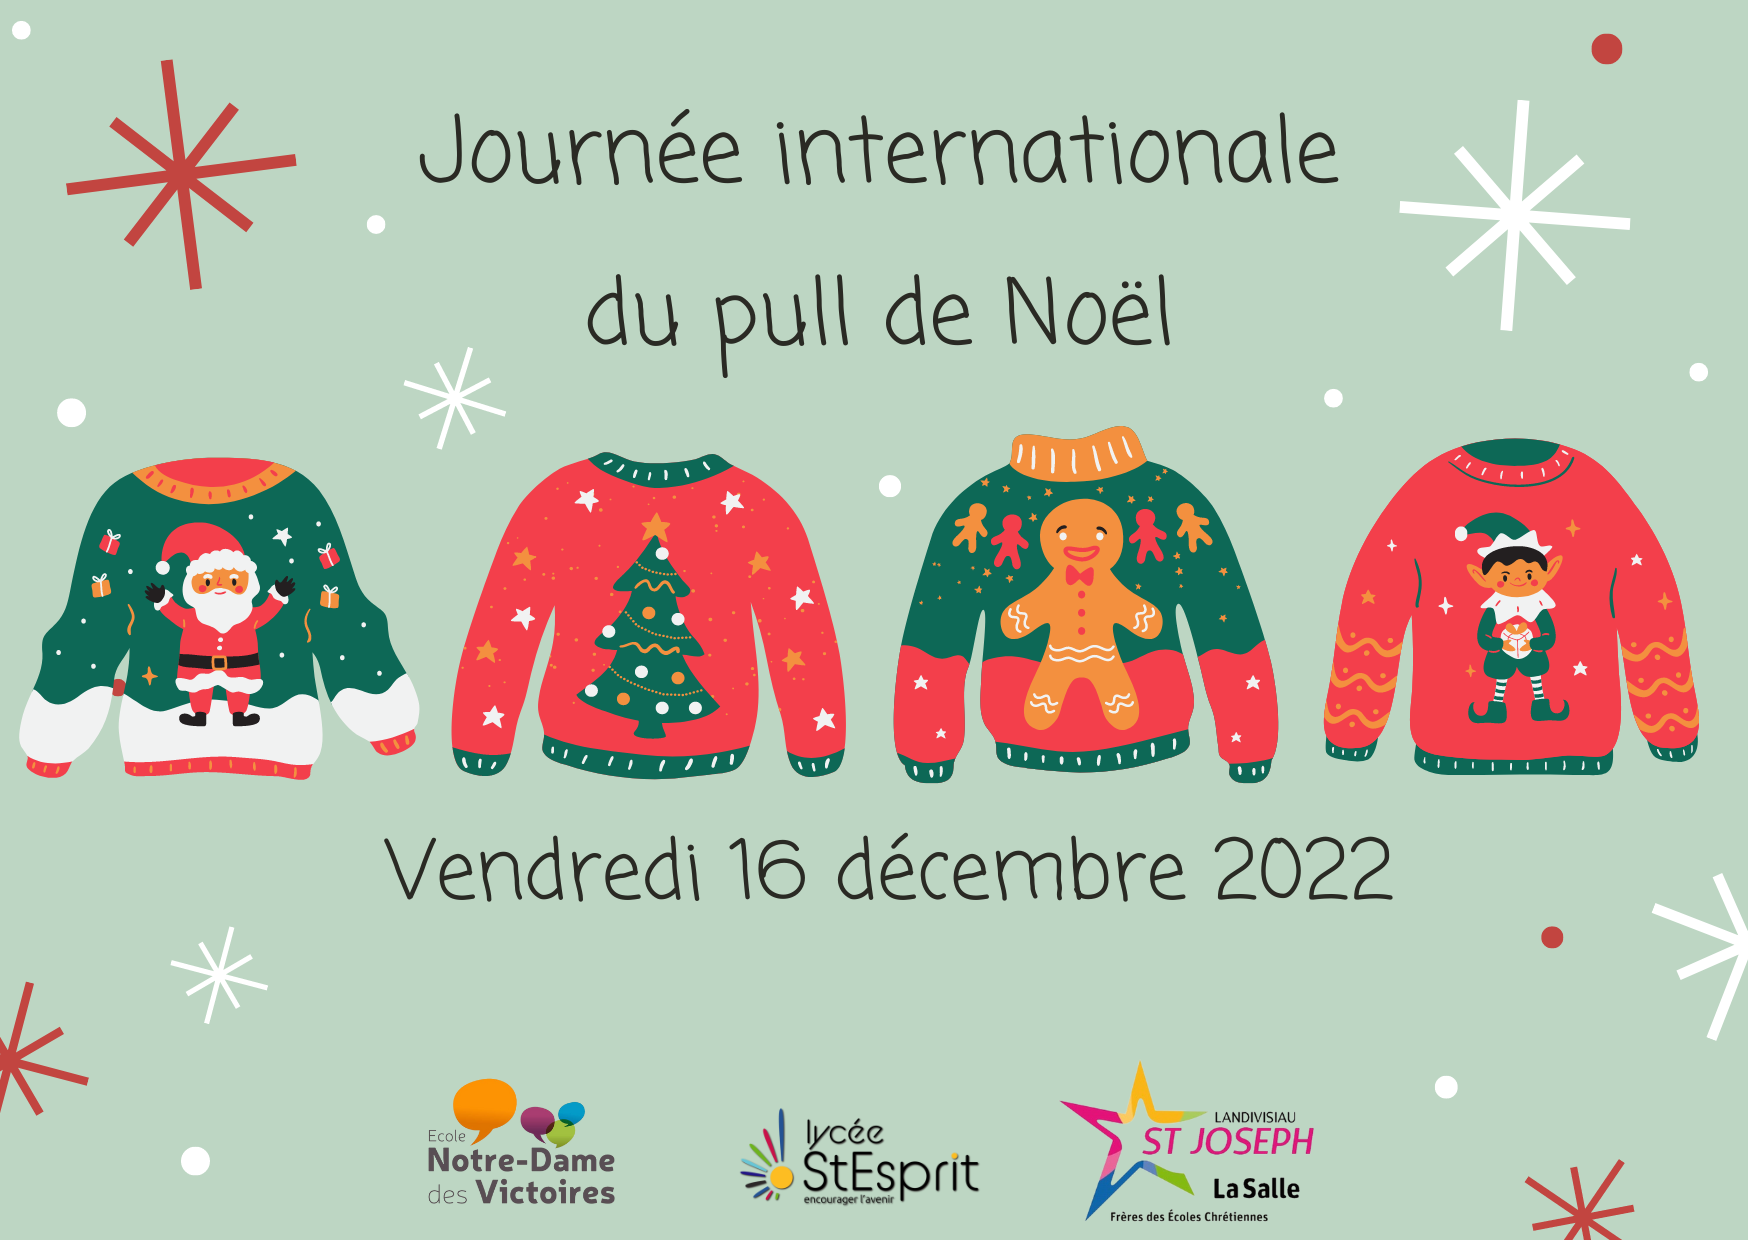 Journée internationale du pull de Noël - École Notre Dame des Victoires